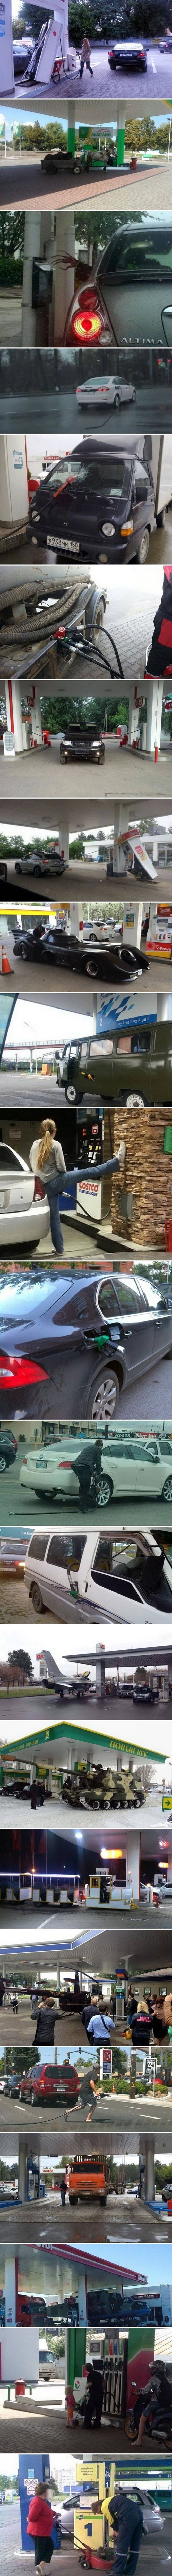 Urnebesne slike koje pokazuju zbog čega radnike na benzinskim postajama ništa više ne može iznenaditi